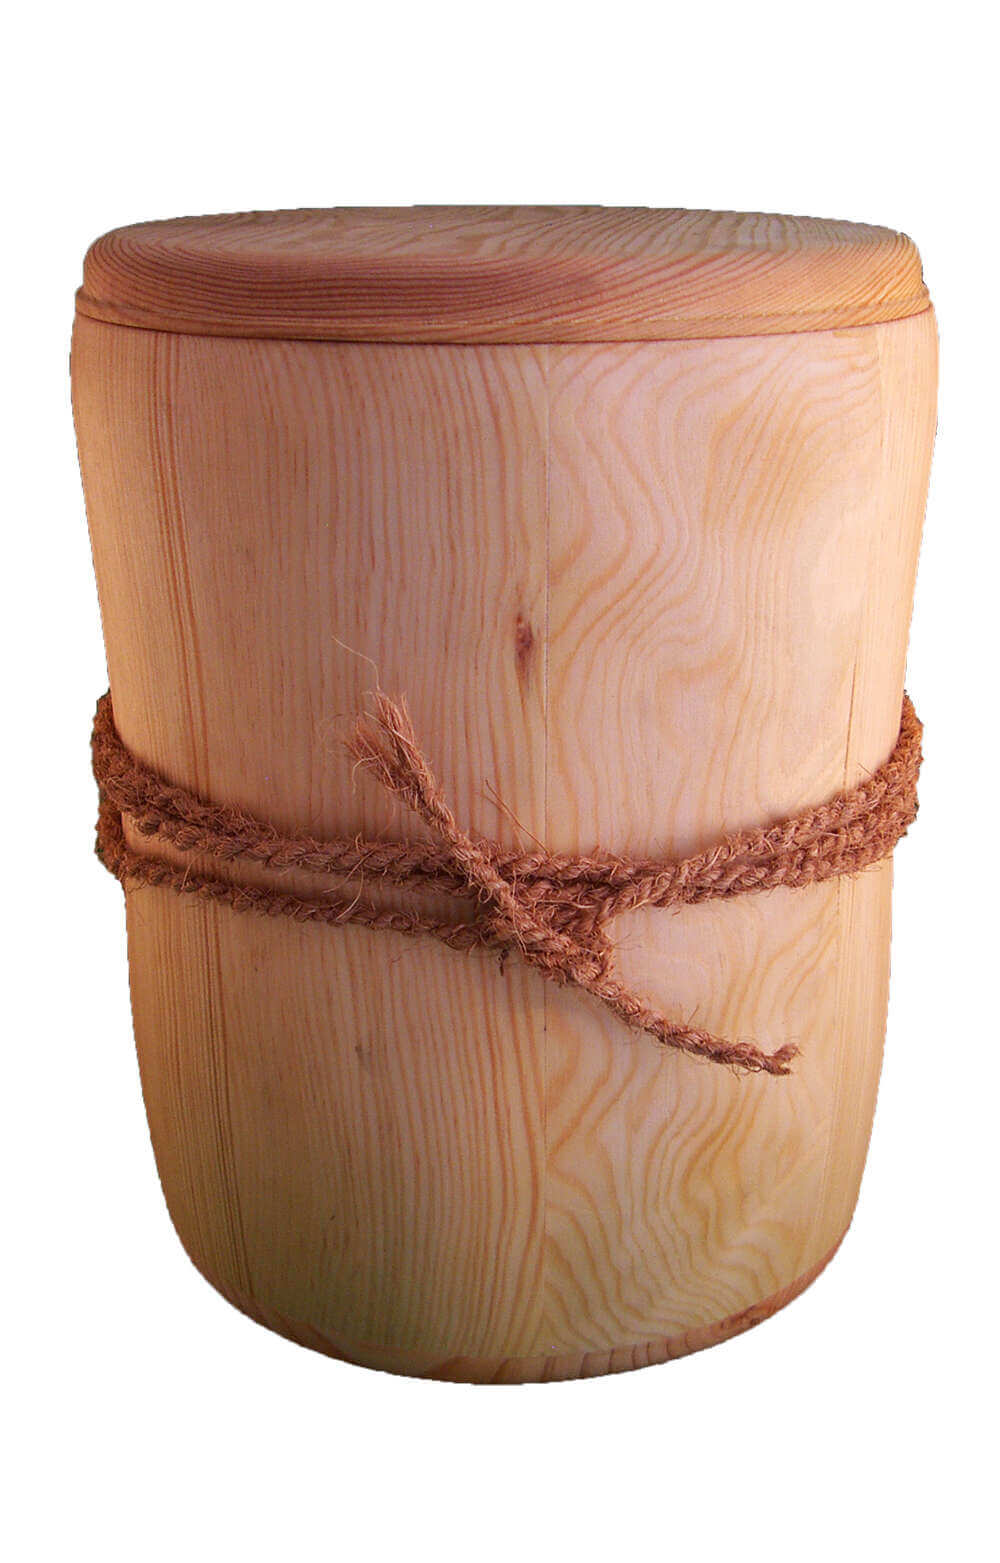 en HB2827 wooden funderal urn on sale